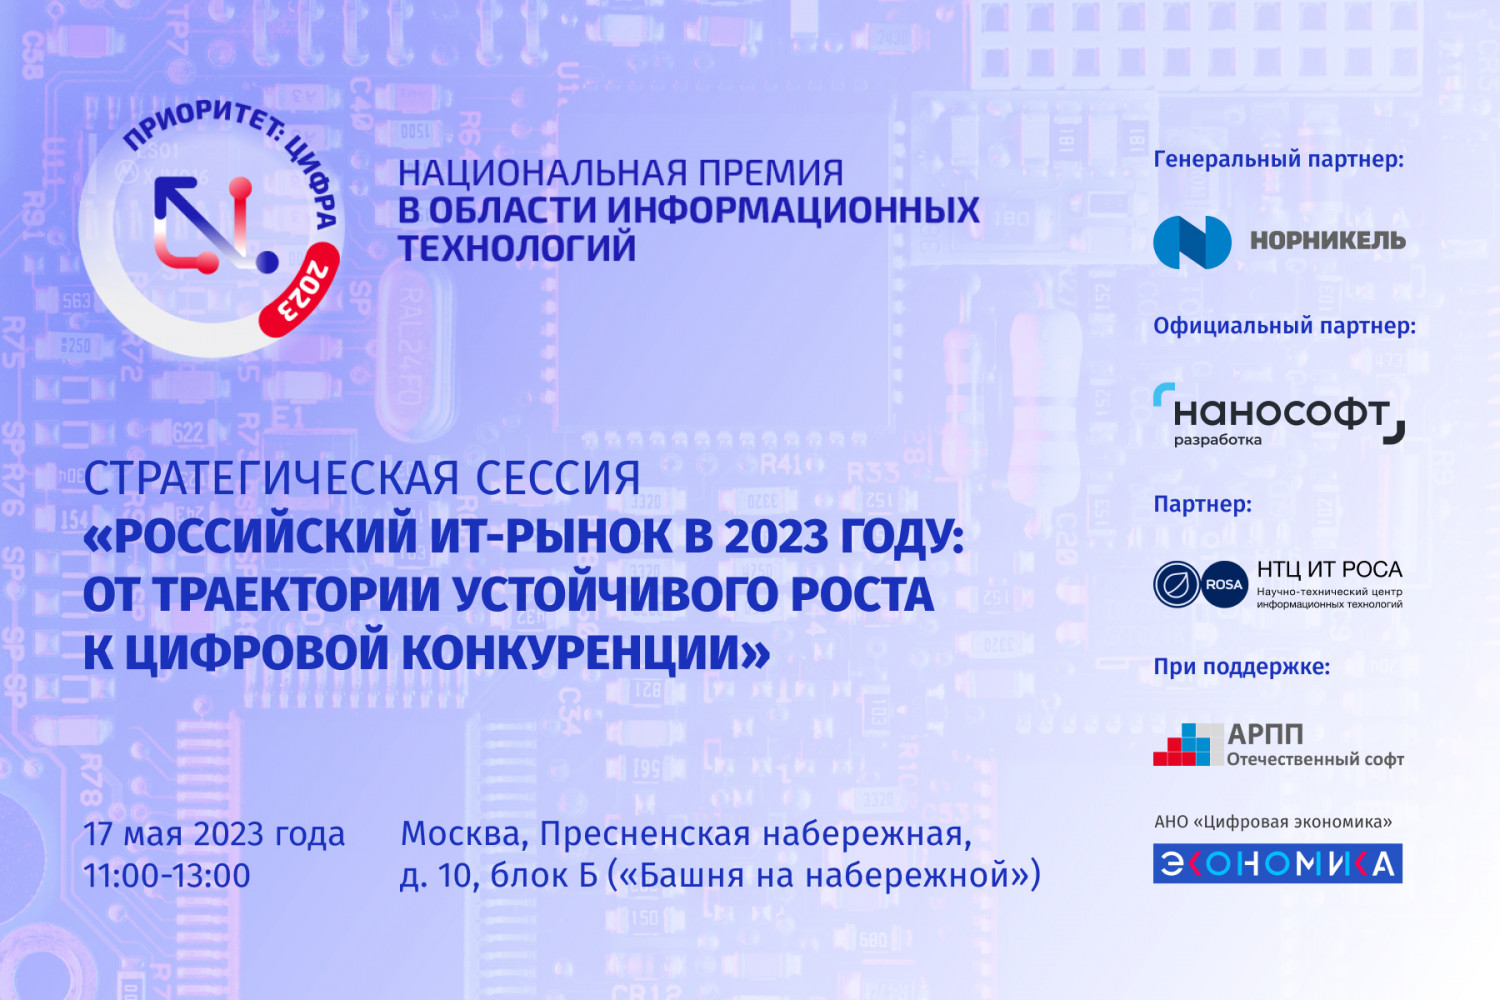 Перспективы развития ИТ-сектора обсудят на стратегической сессии «Российский ИТ-рынок в 2023 году»